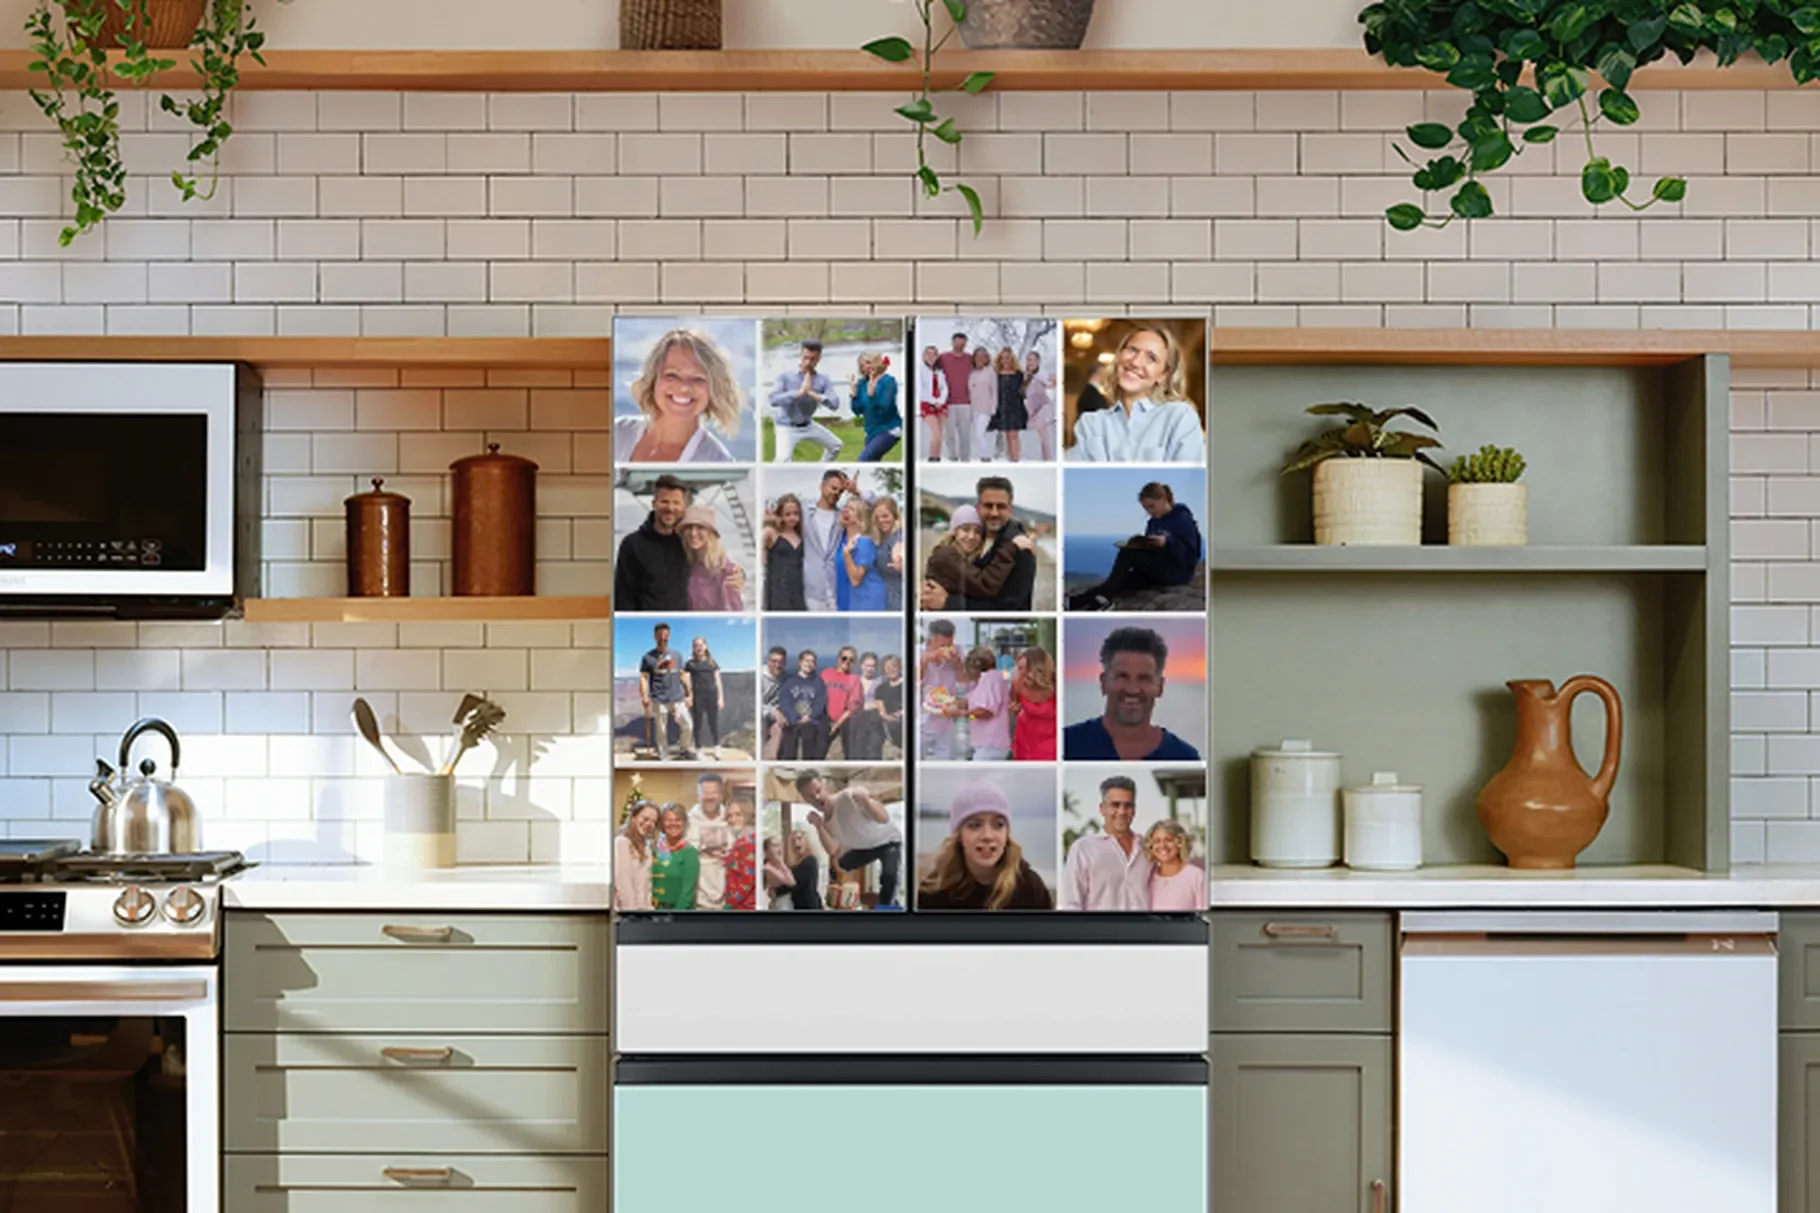 Η νέα λειτουργία των Samsung BeSpoke ψυγείων φέρνει τη φωτογραφία σας στην επιφάνειά τους